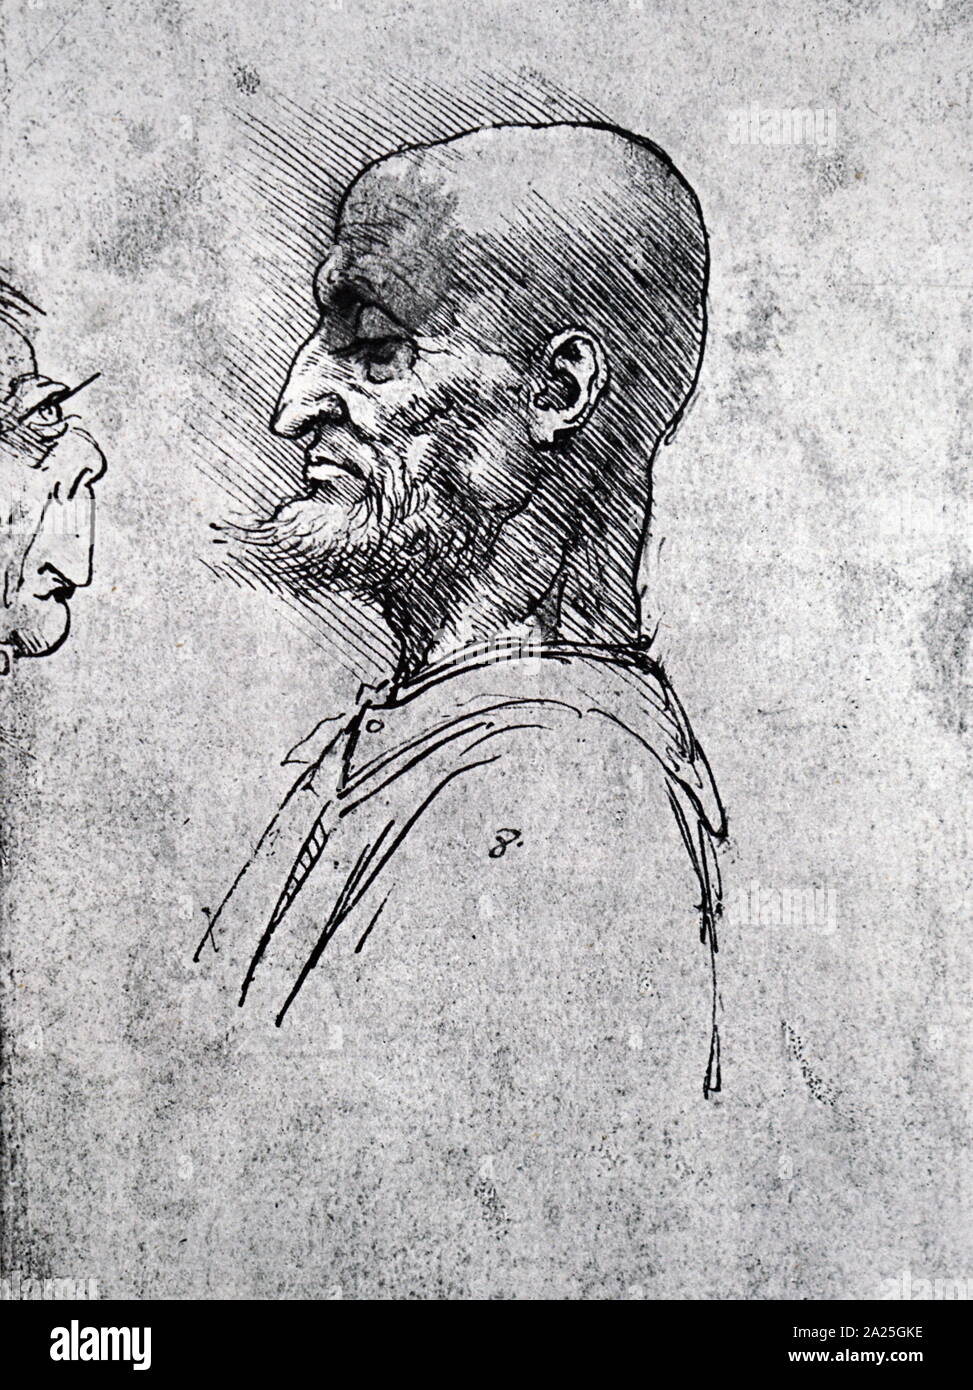 Una caricatura di Leonardo da Vinci. Leonardo di ser Piero da Vinci (1452-1519) un polymath italiana del Rinascimento. Foto Stock